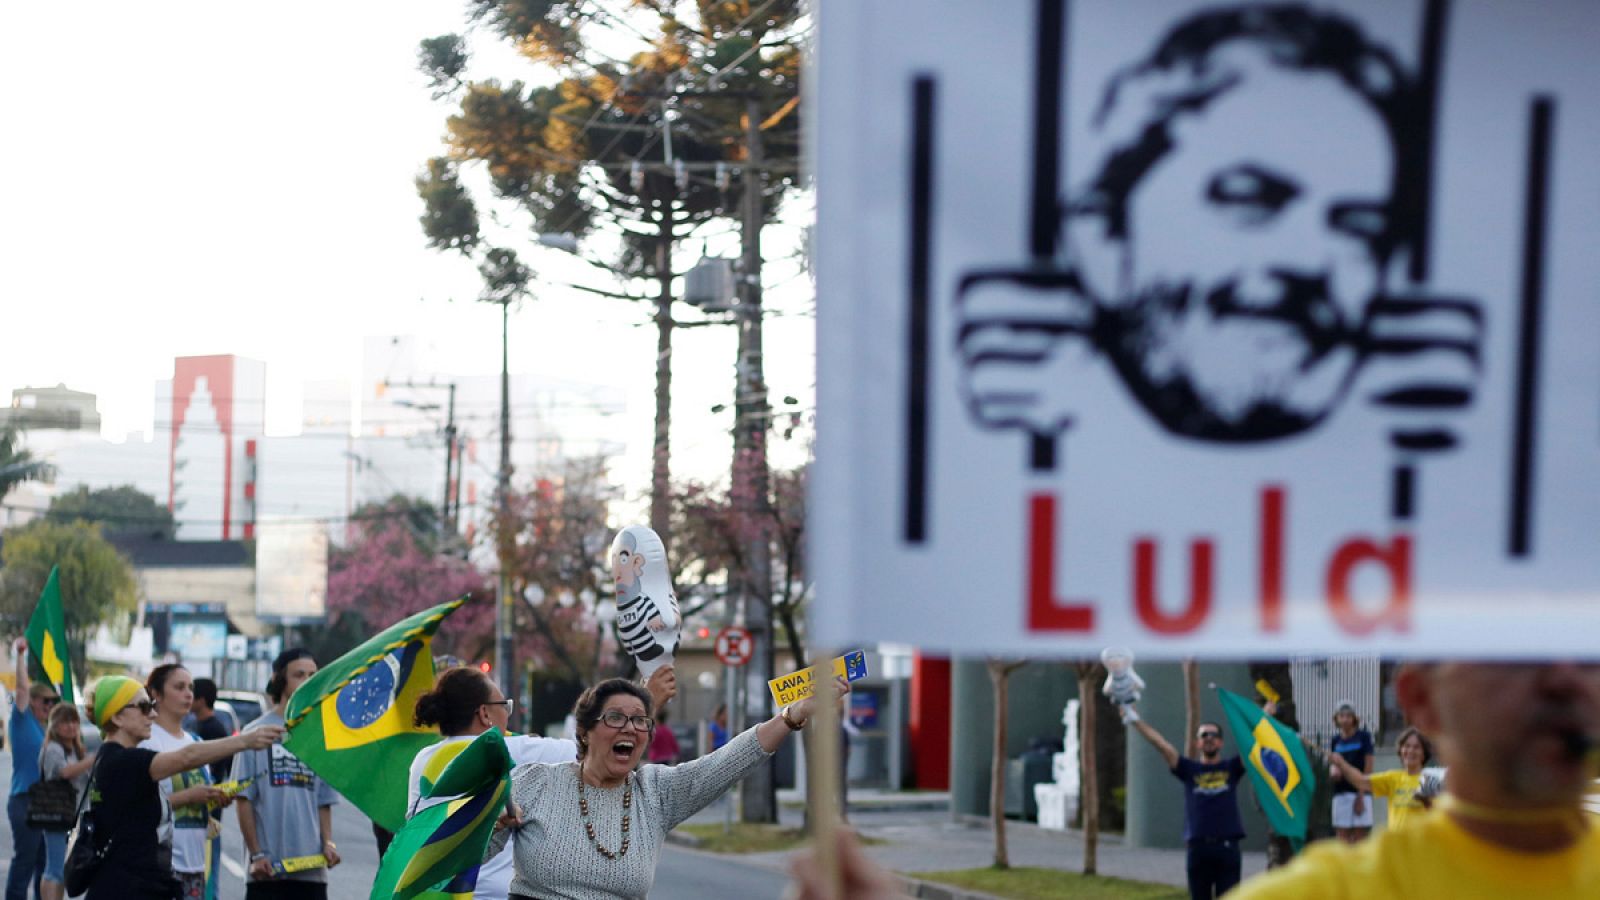 La defensa de Lula: la condena es "especulativa" e "ignora" pruebas